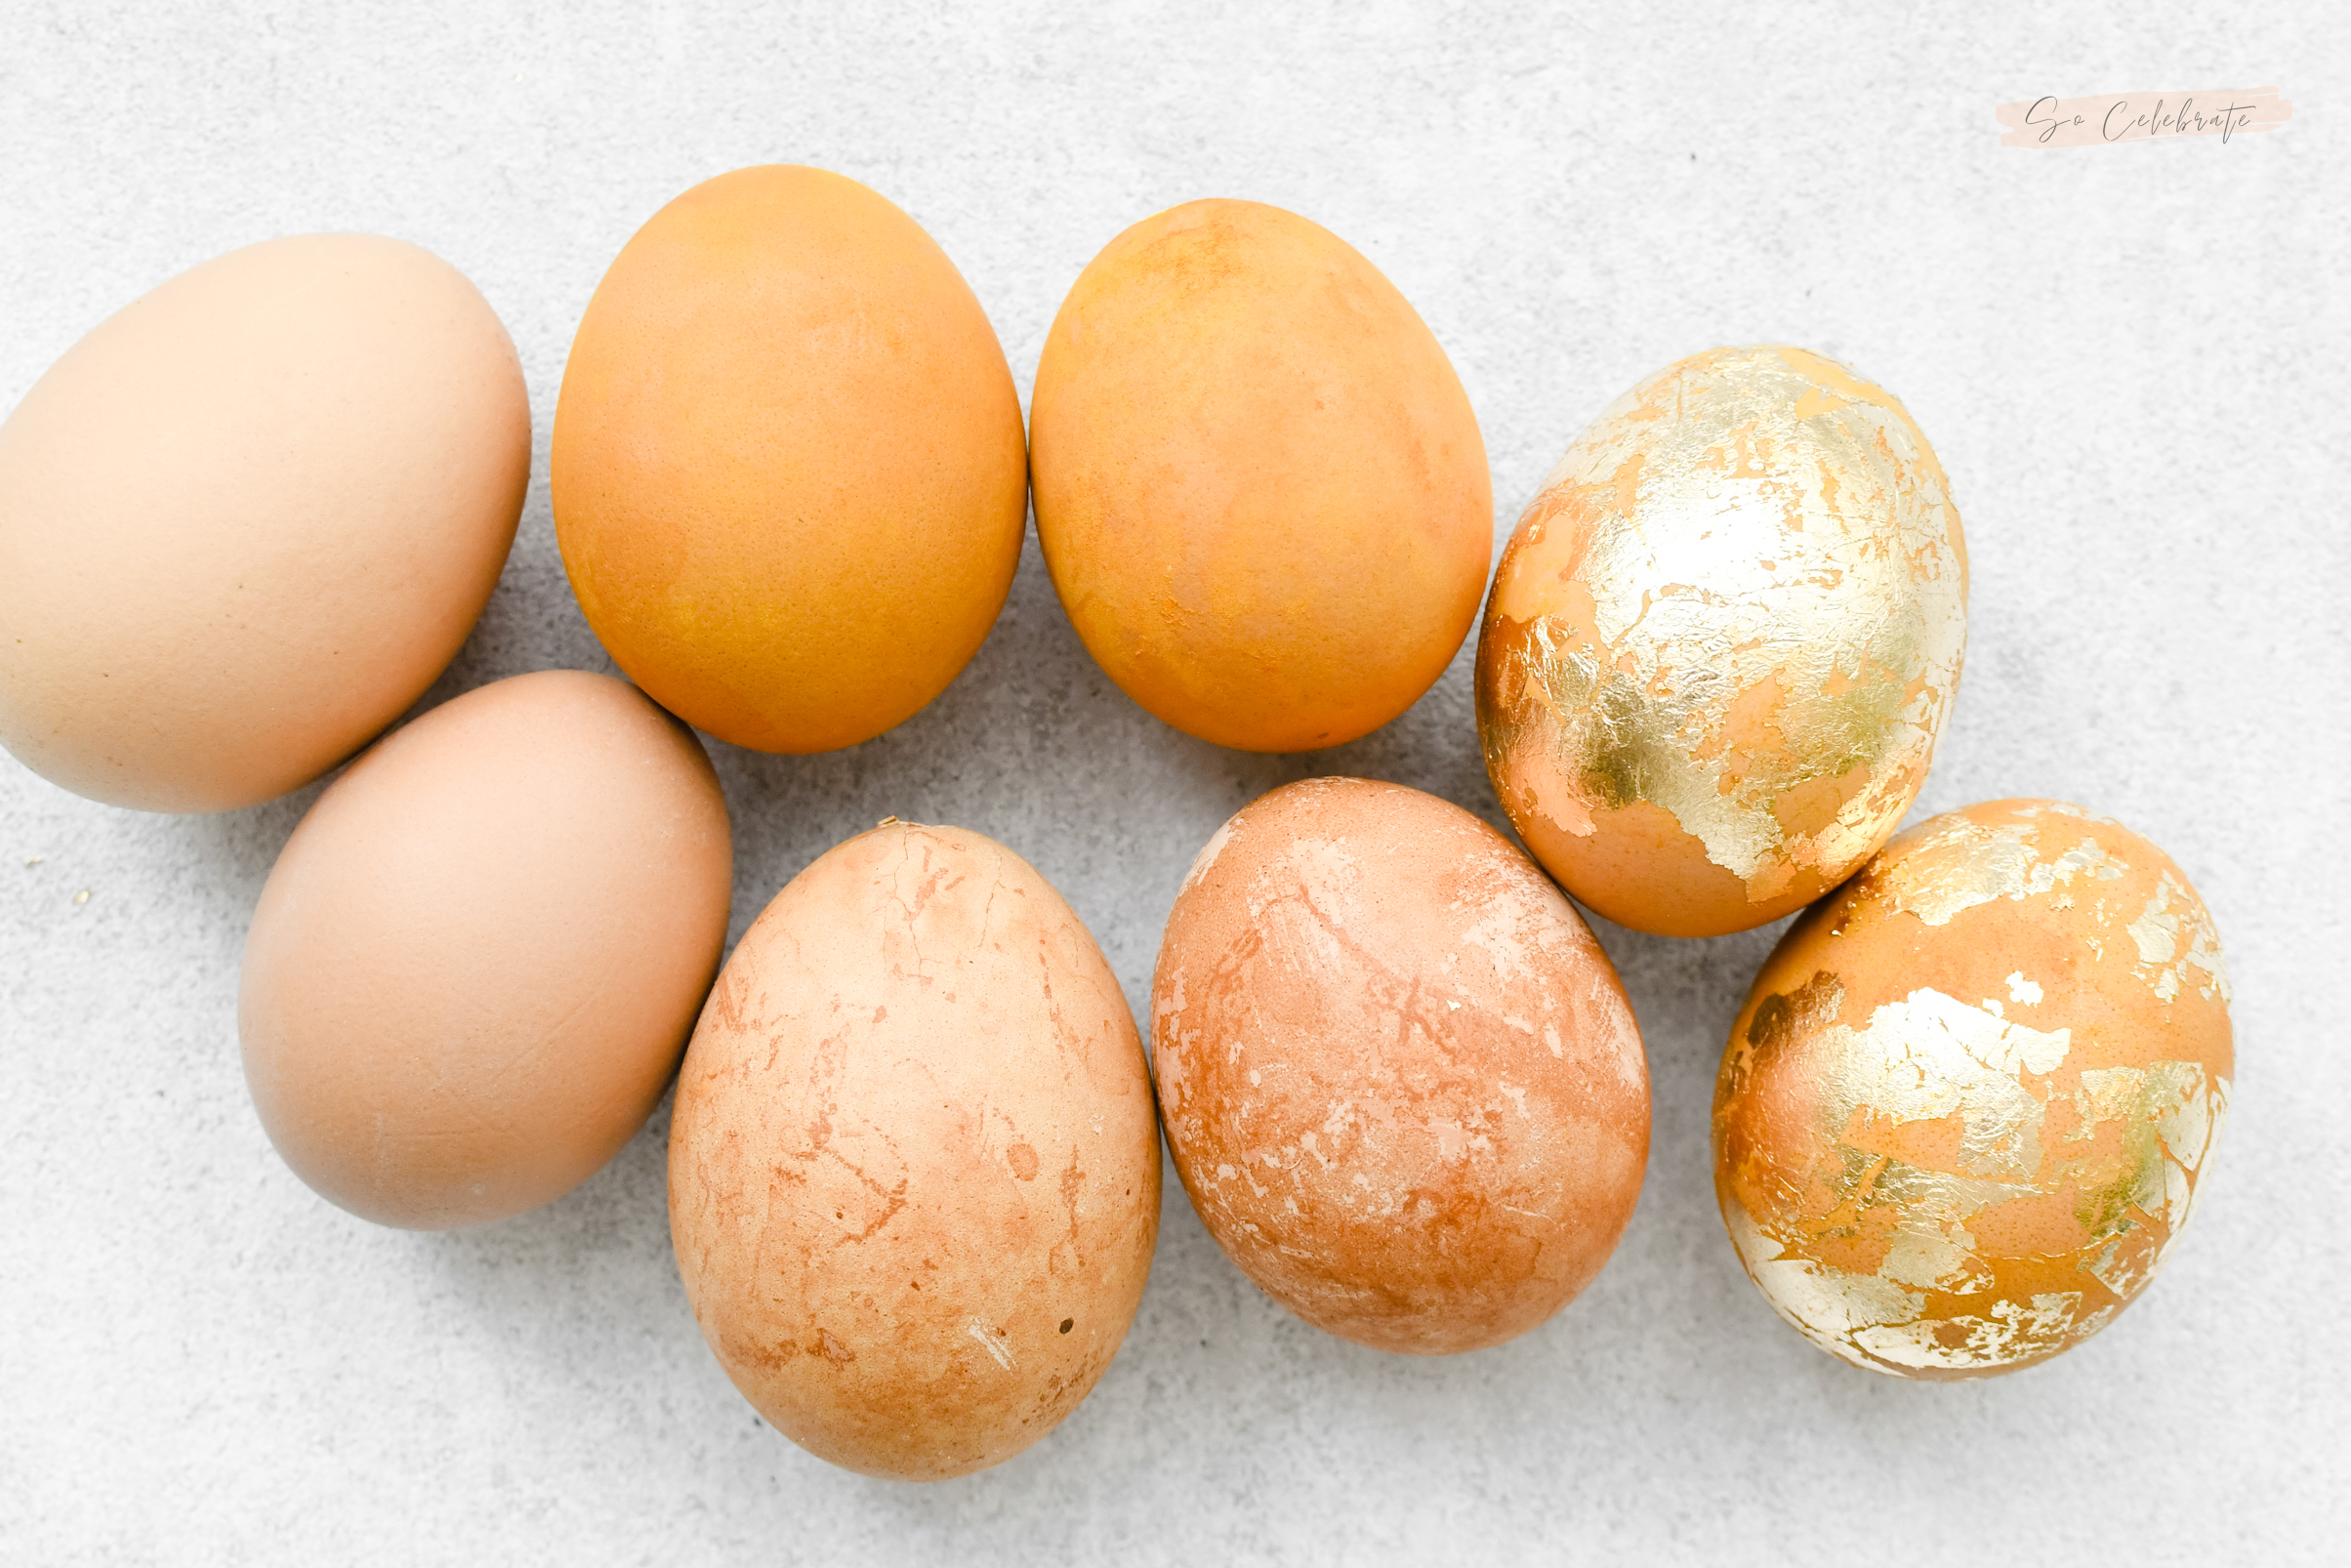 eieren verven met natuurlijke kleurstoffen - kurkuma en thee